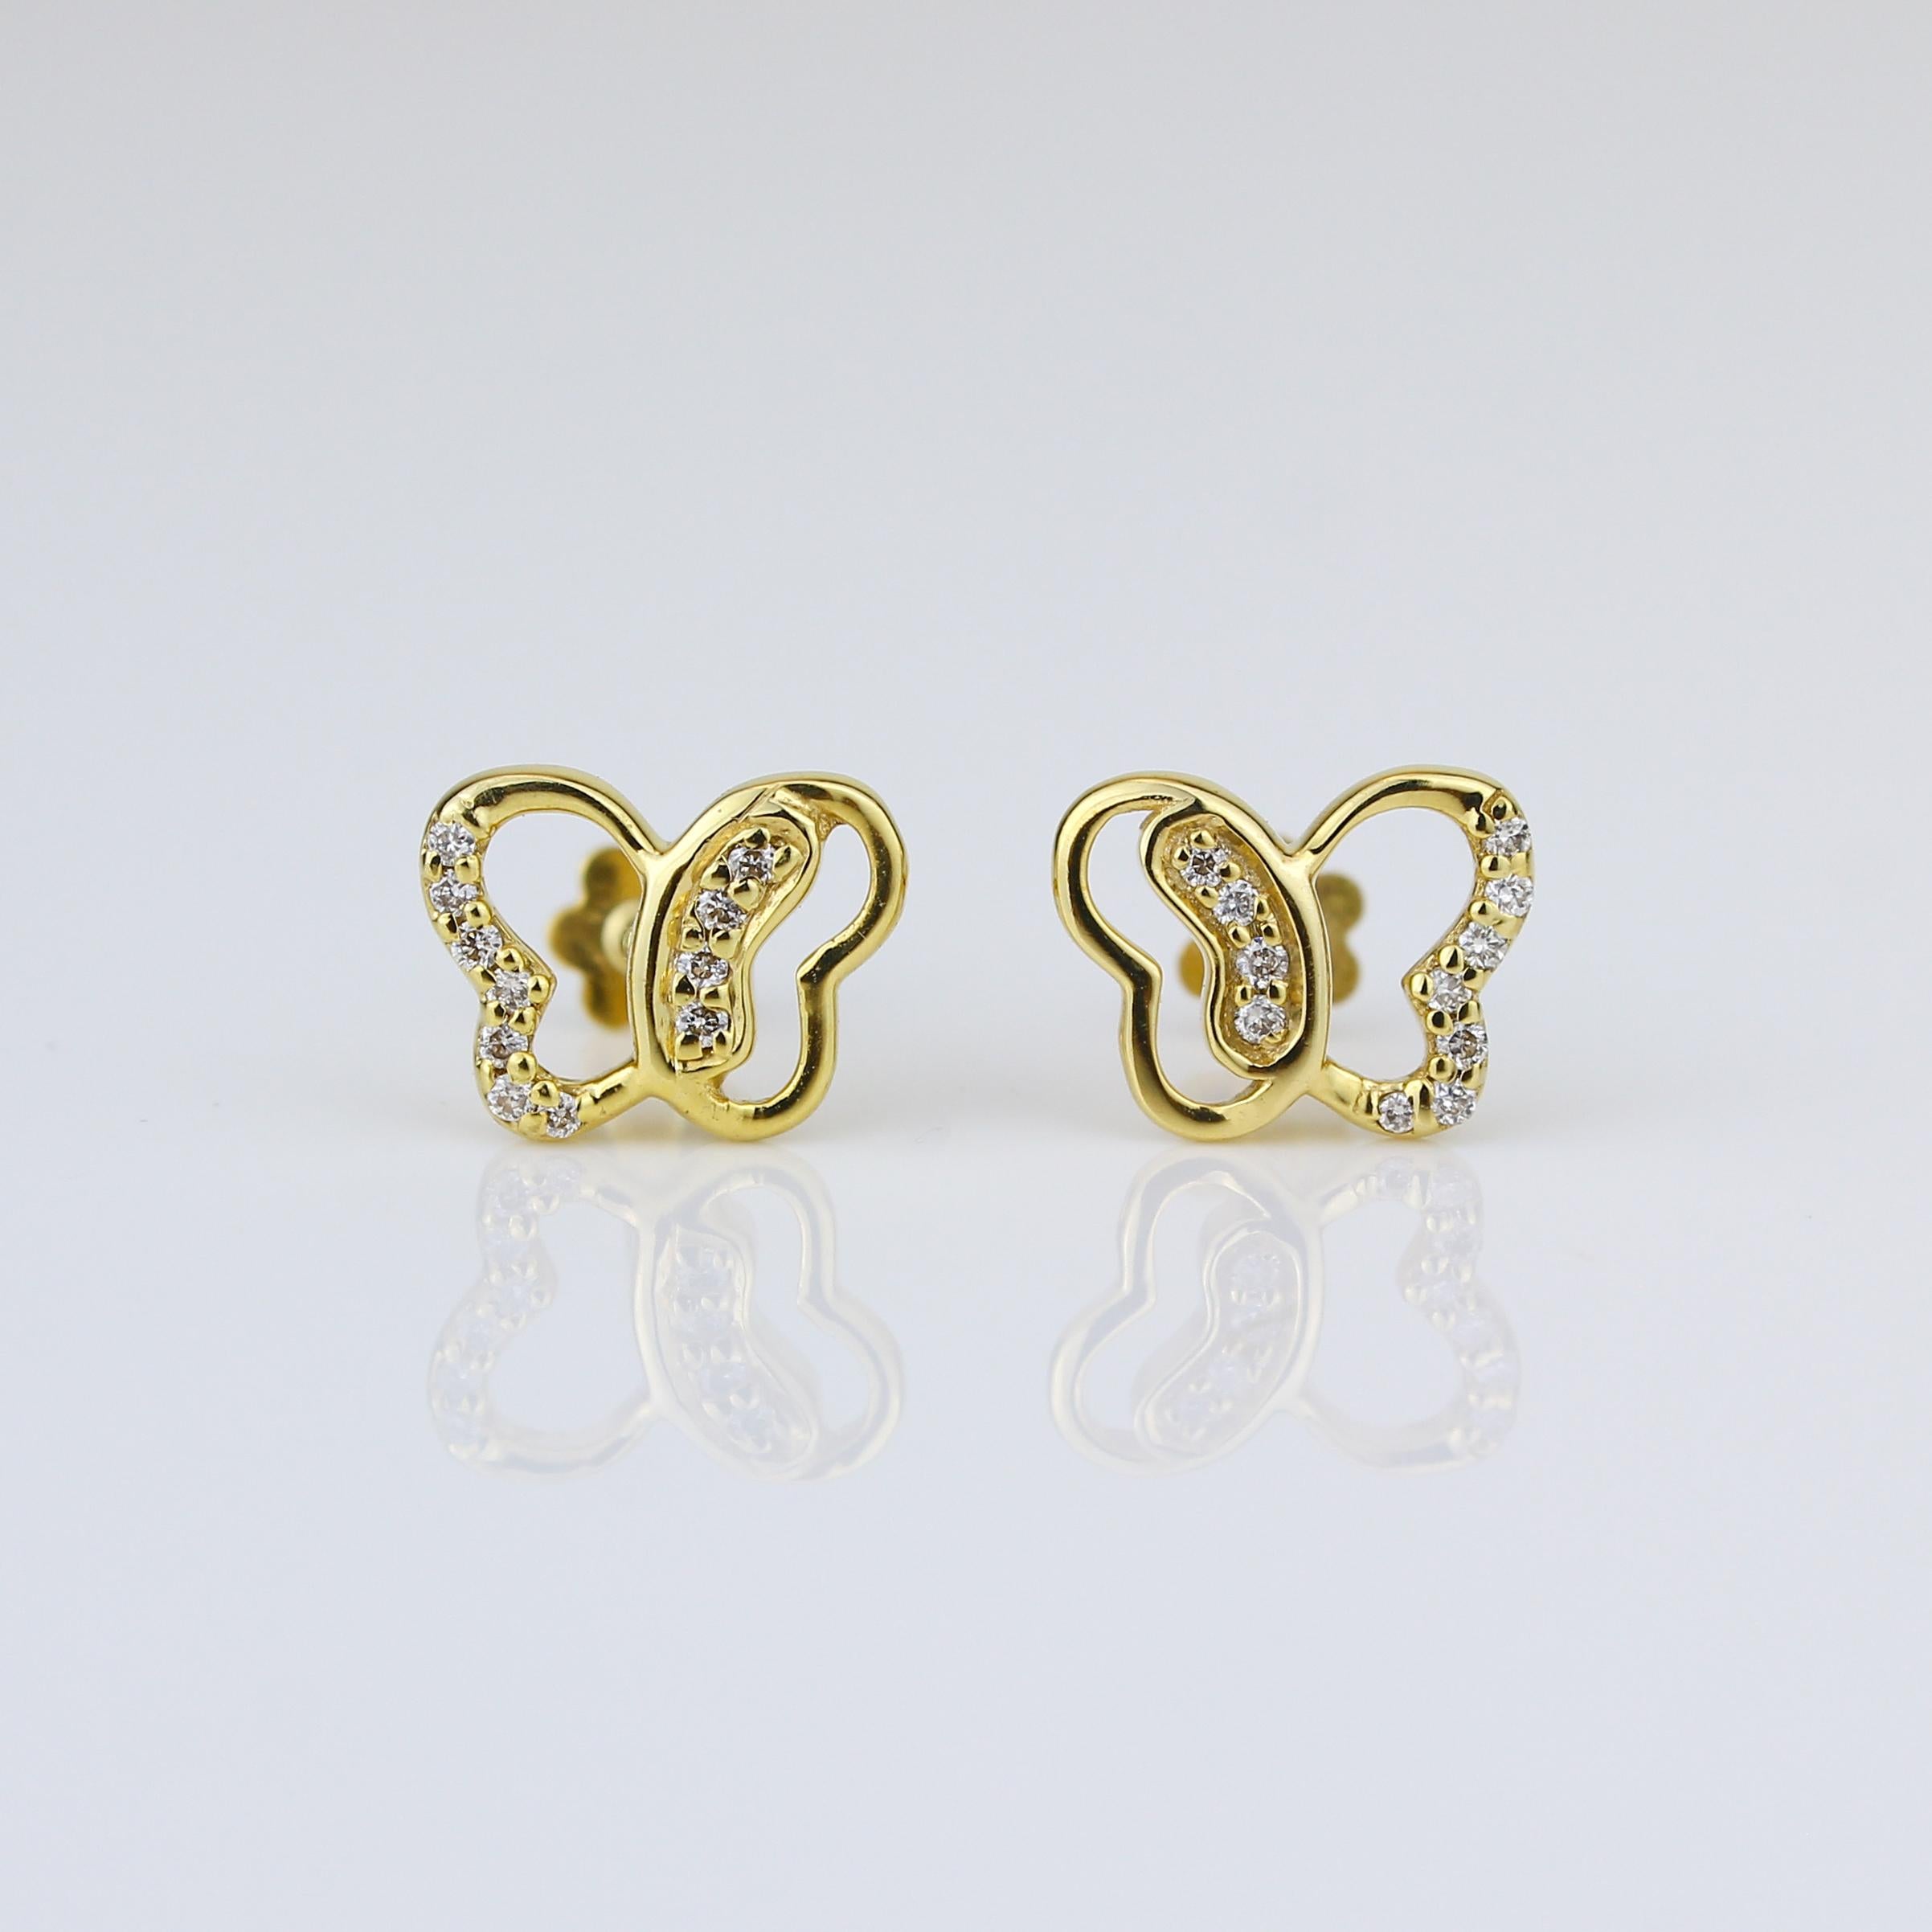 Diese entzückenden Schmetterlings-Diamant-Ohrringe für Mädchen (Kinder/Kleinkinder) sind eine perfekte Mischung aus Niedlichkeit und Raffinesse. Diese Ohrringe aus glänzendem, massivem 18-karätigem Gold zeigen charmante Schmetterlingsmotive, die mit